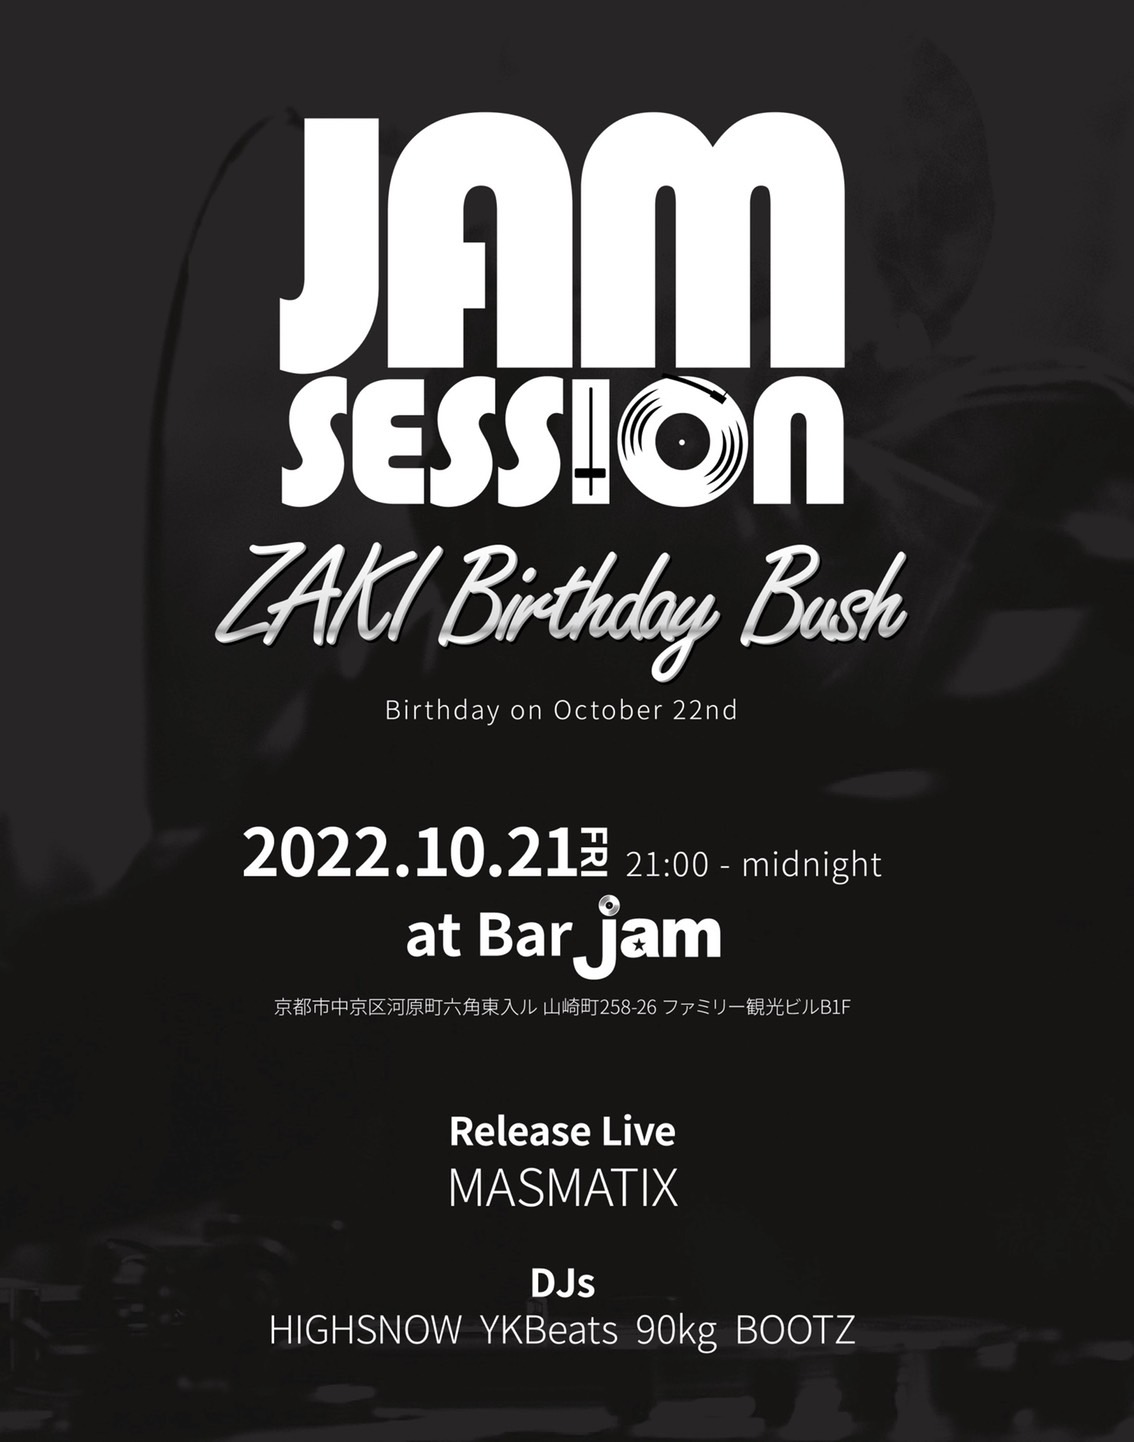 Jam session Zaki birthday bush @bar jam　2022.10.21(fri)